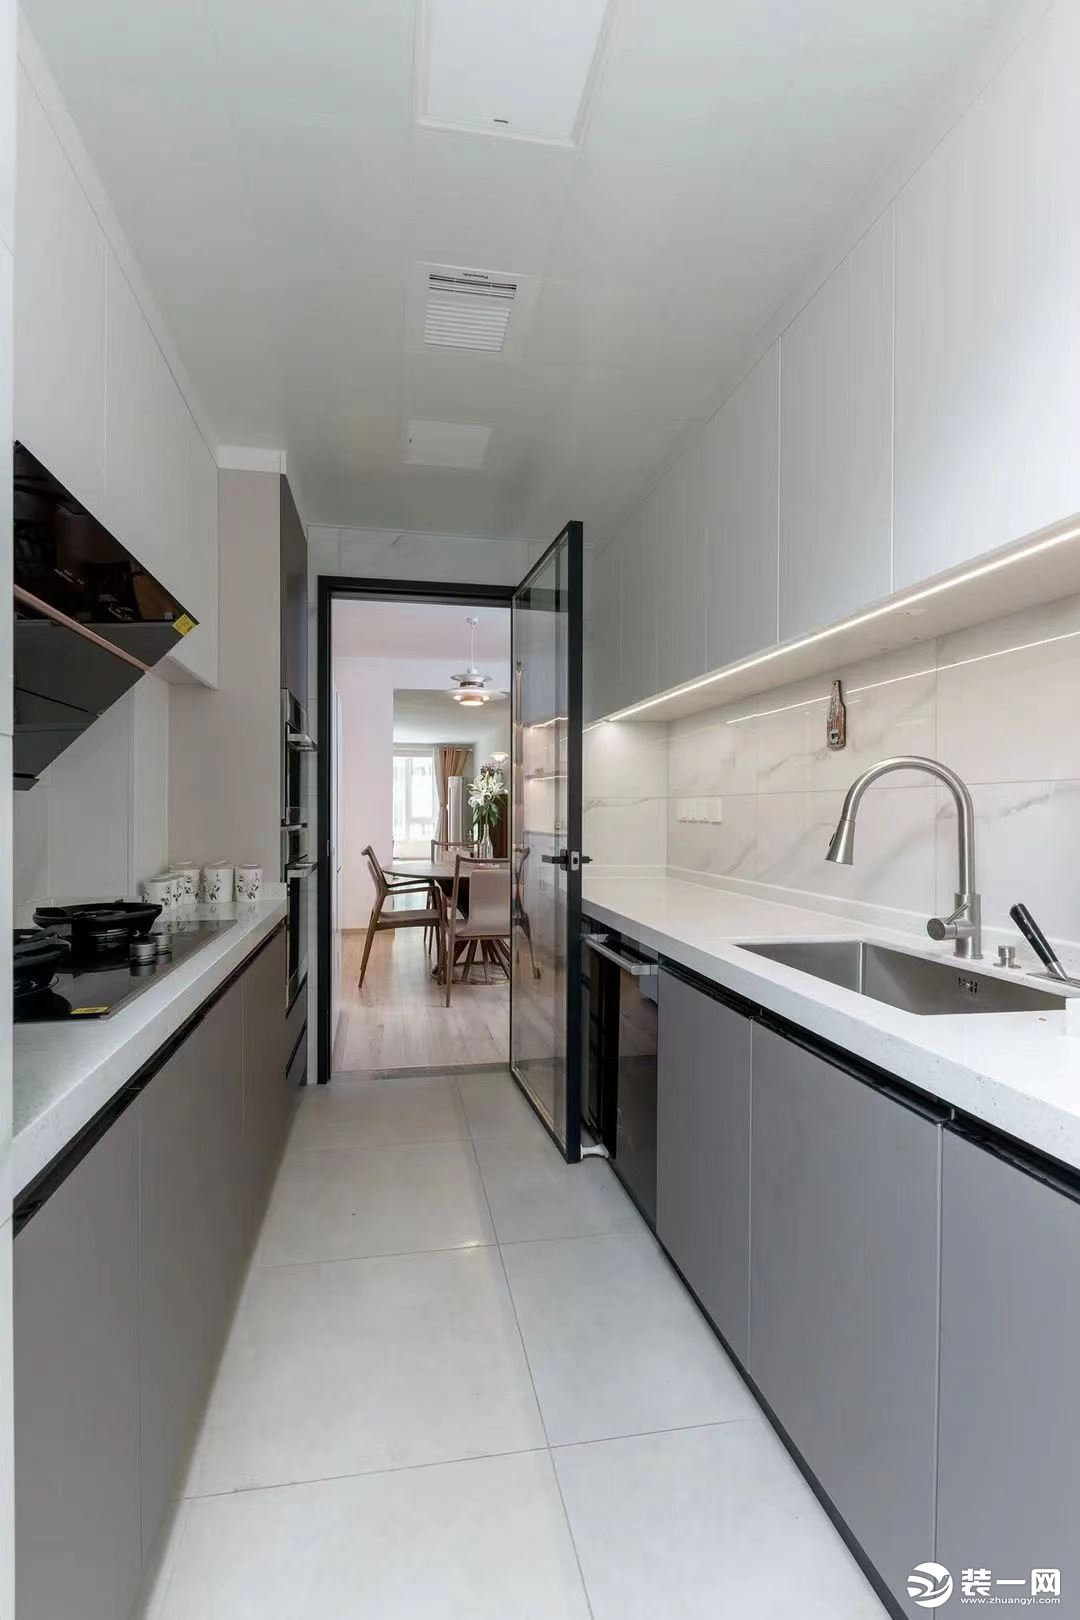 吊柜+橱柜的设计方式，保证了厨房充足的收纳空间。灰白两色运用，又让空间更有层次感